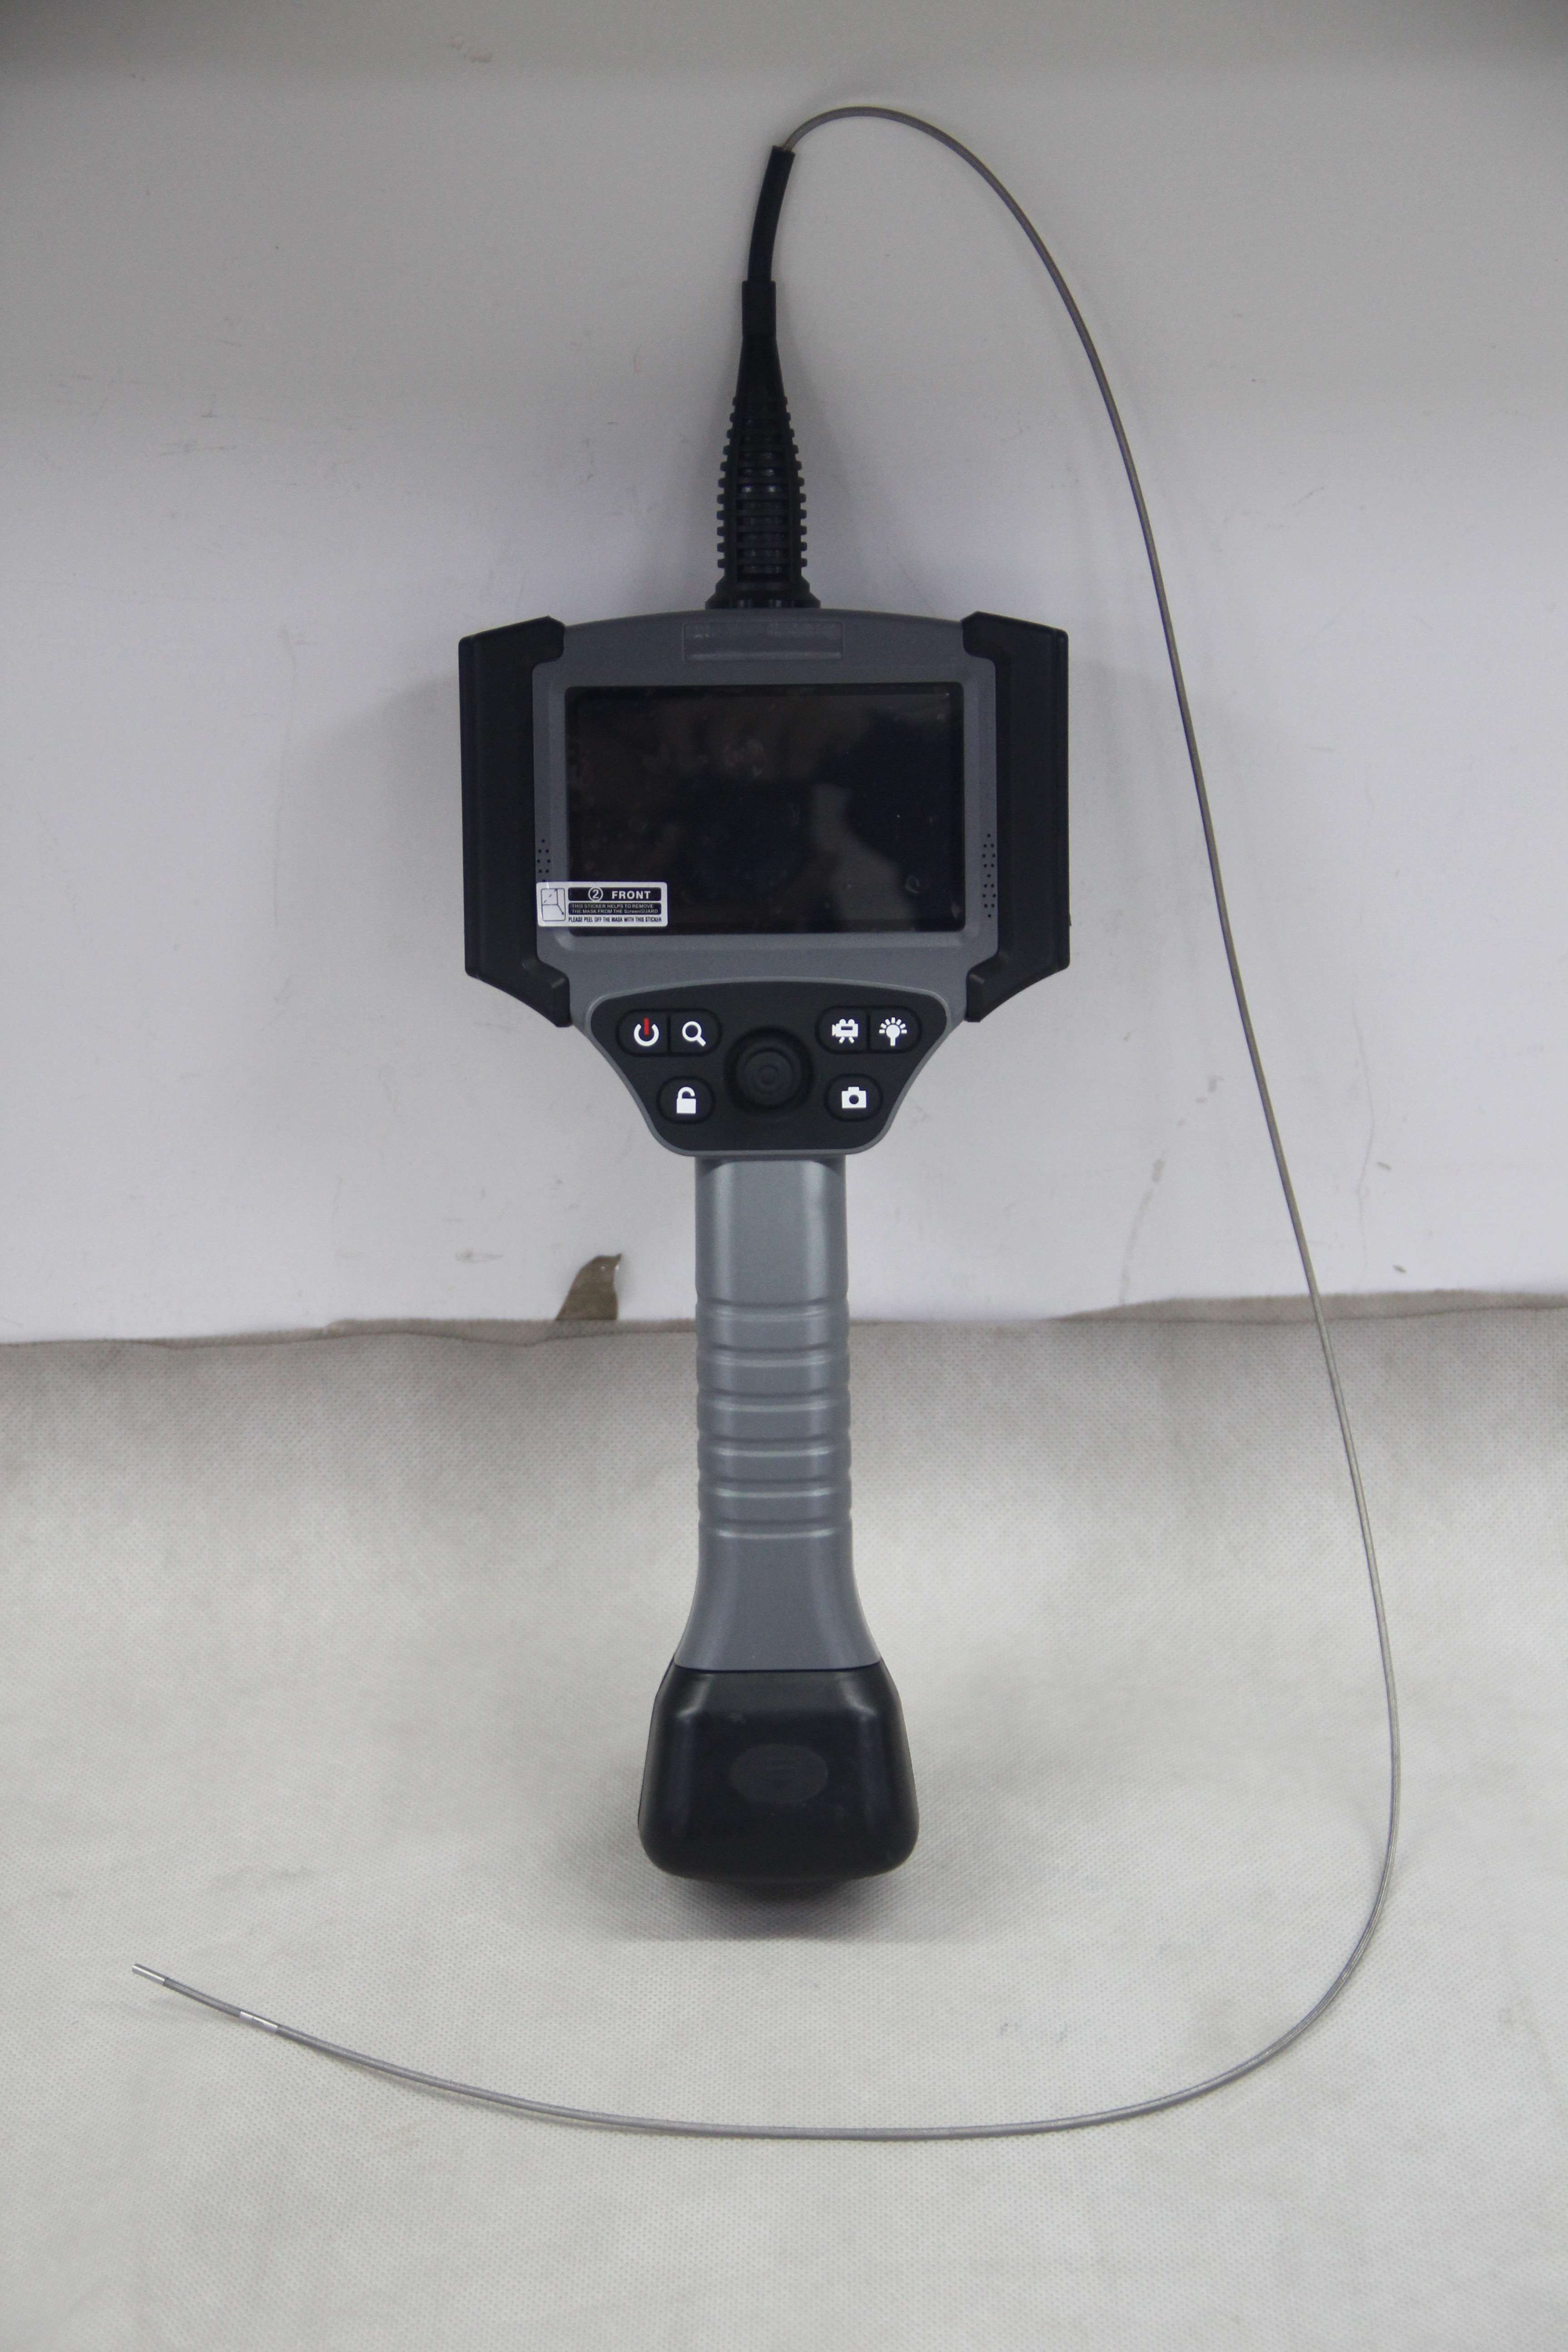 Heat exchanger industrial video borescope